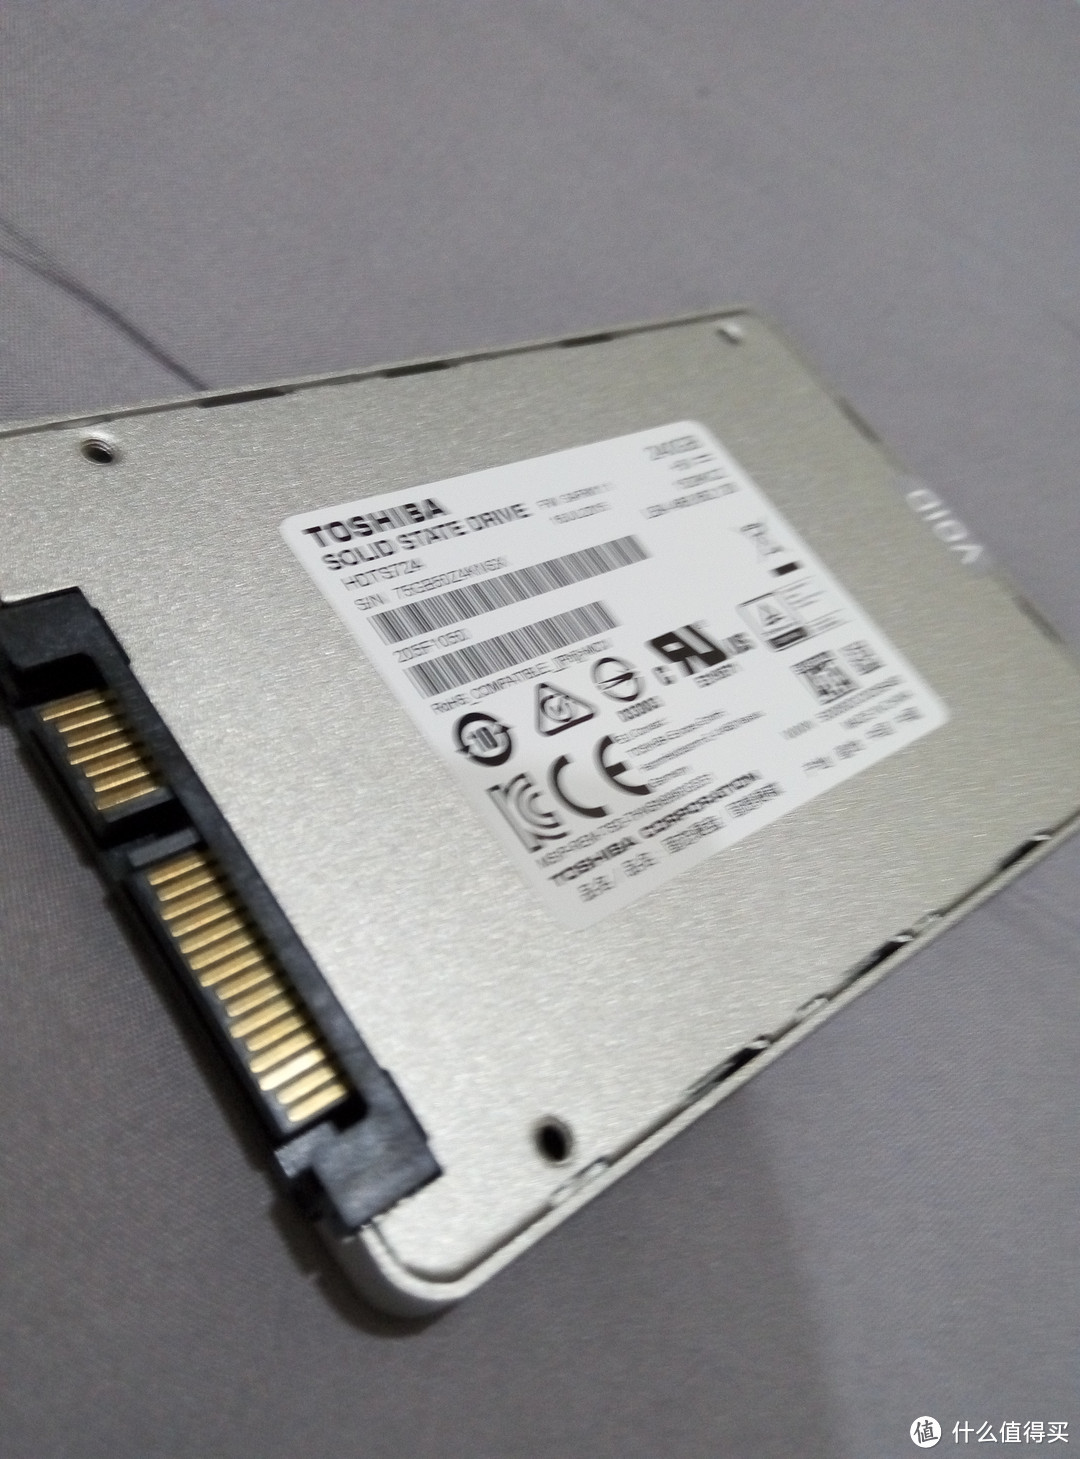 被我退货的SSD固态硬盘 — TOSHIBA 东芝 Q300 240G